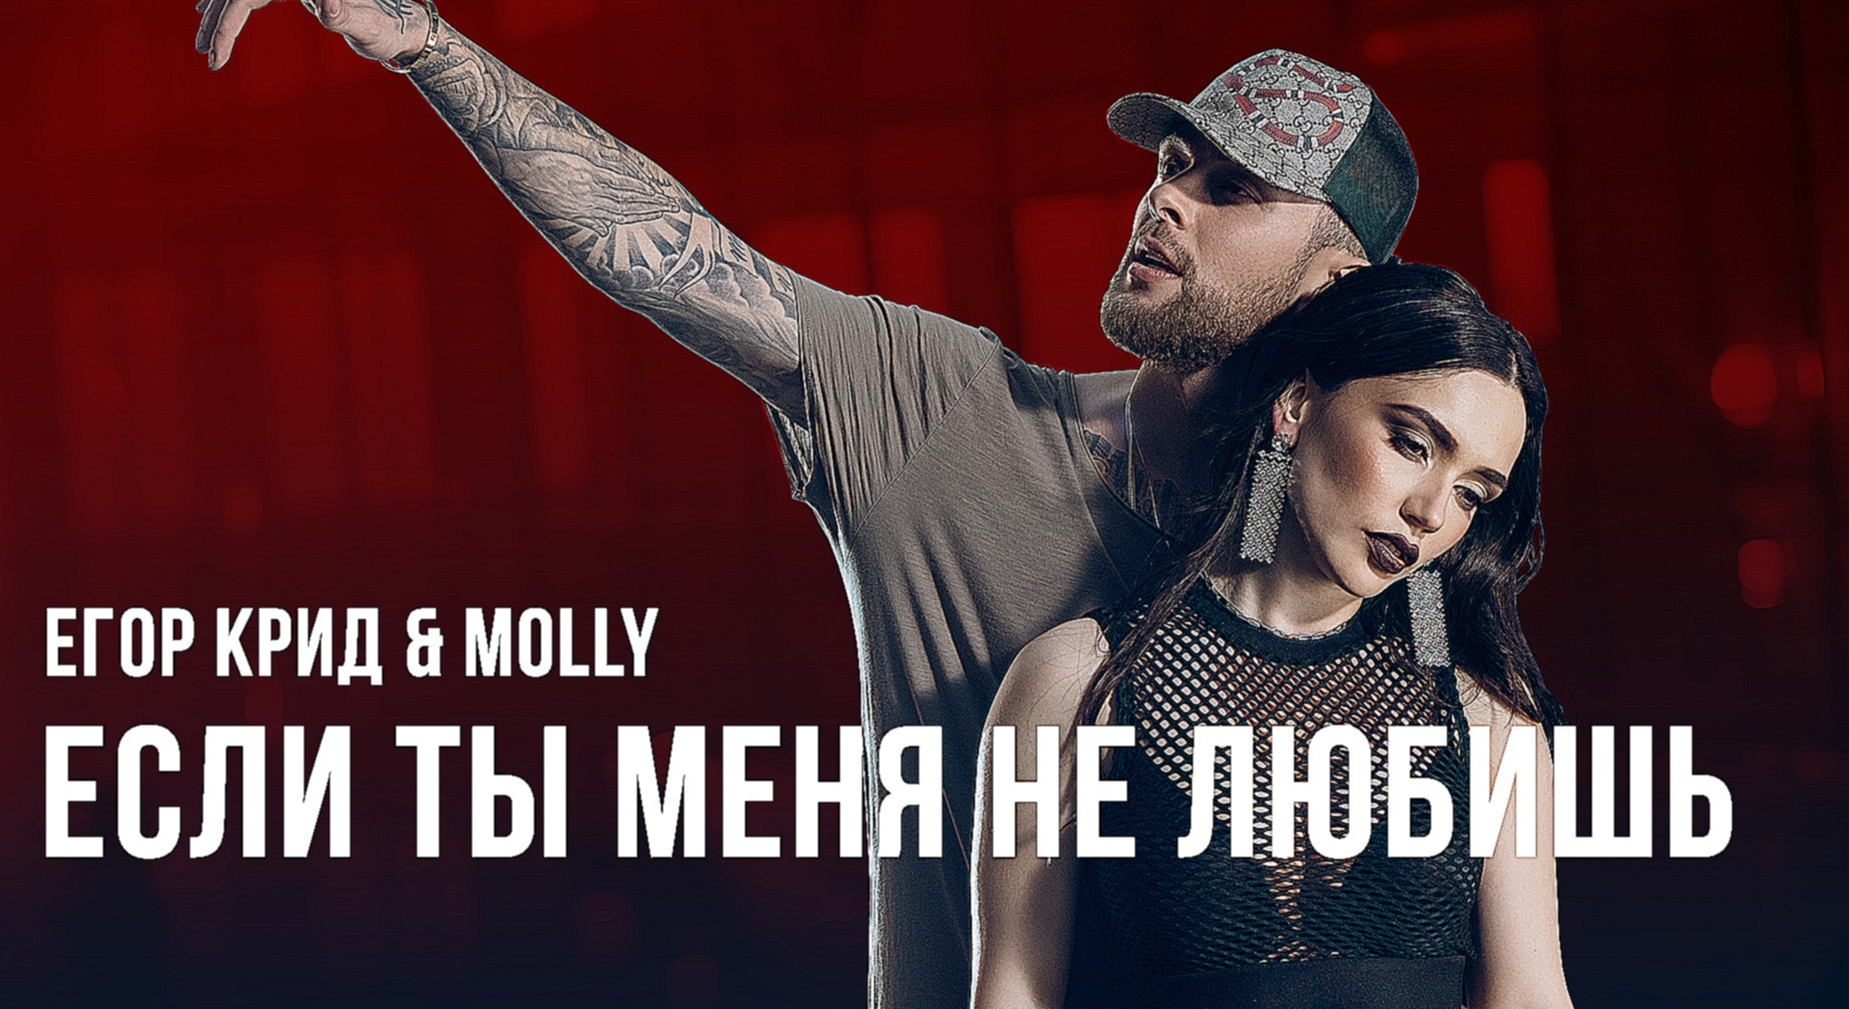 Видеоклип Егор Крид & MOLLY - Если ты меня не любишь (премьера клипа, 2017)